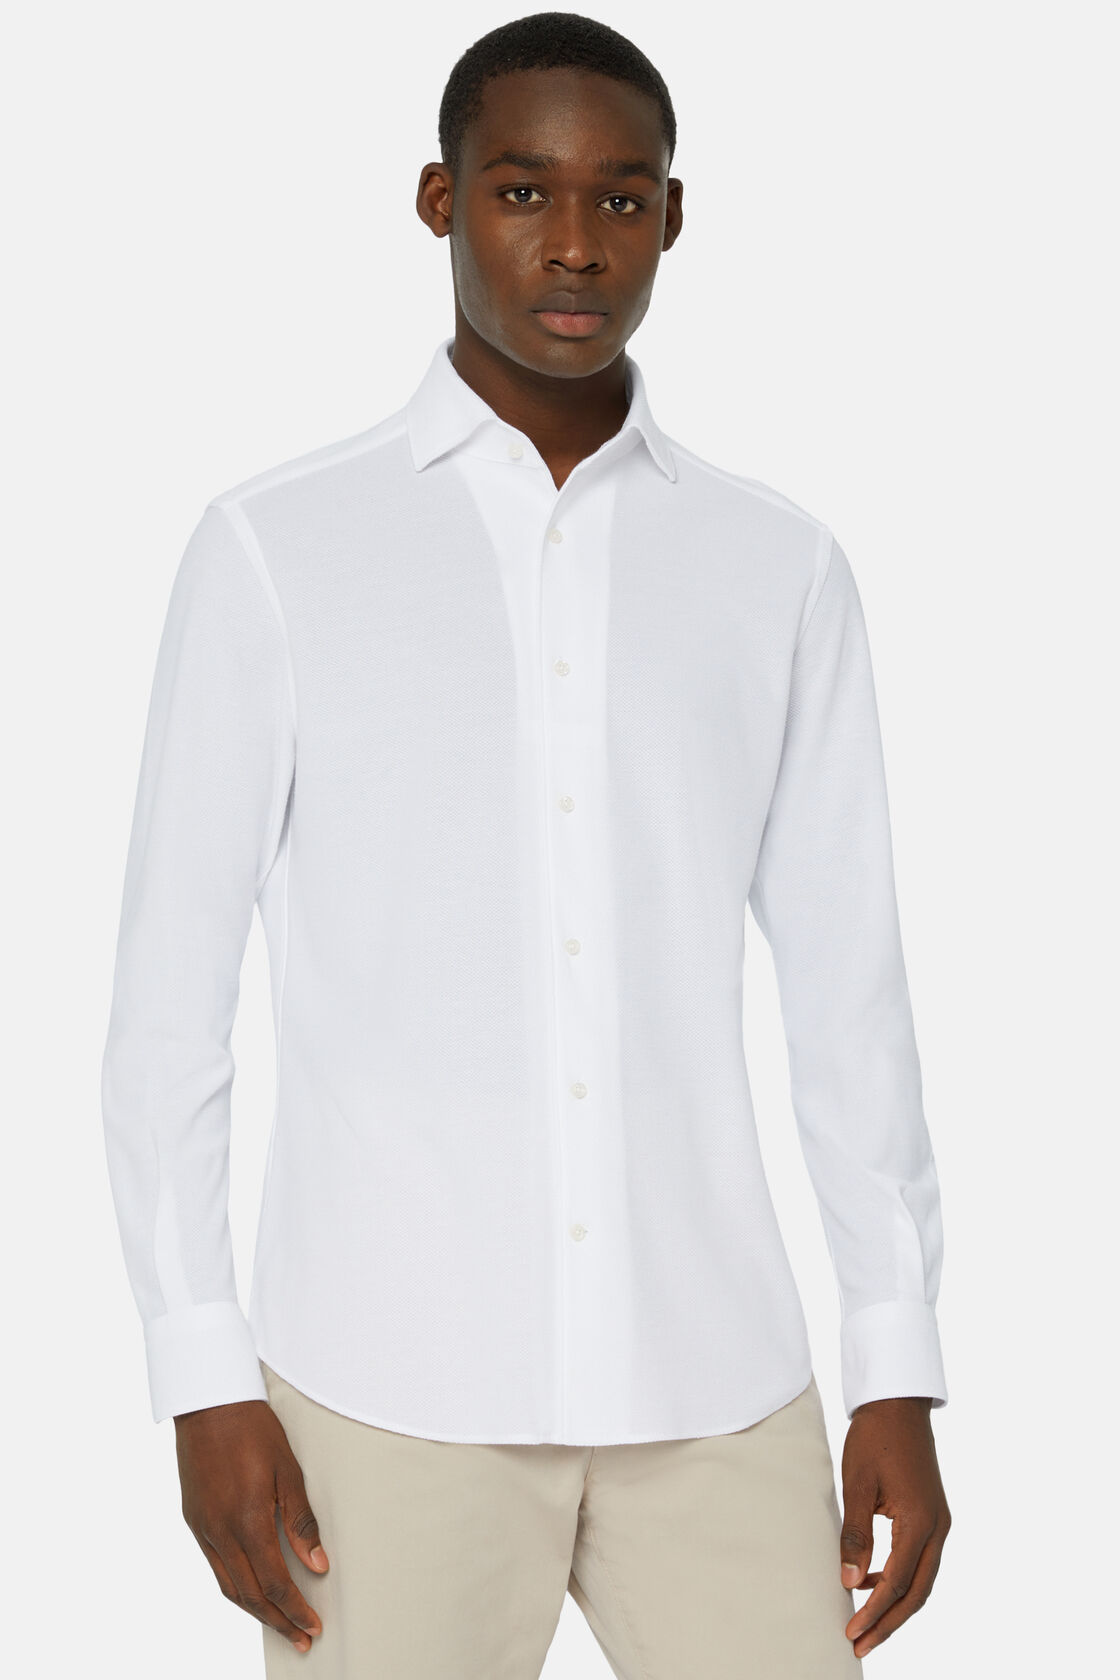 Μπλουζάκι πόλο ζαπονέ από ζέρσεϊ, κανονικής εφαρμογής, White, hi-res